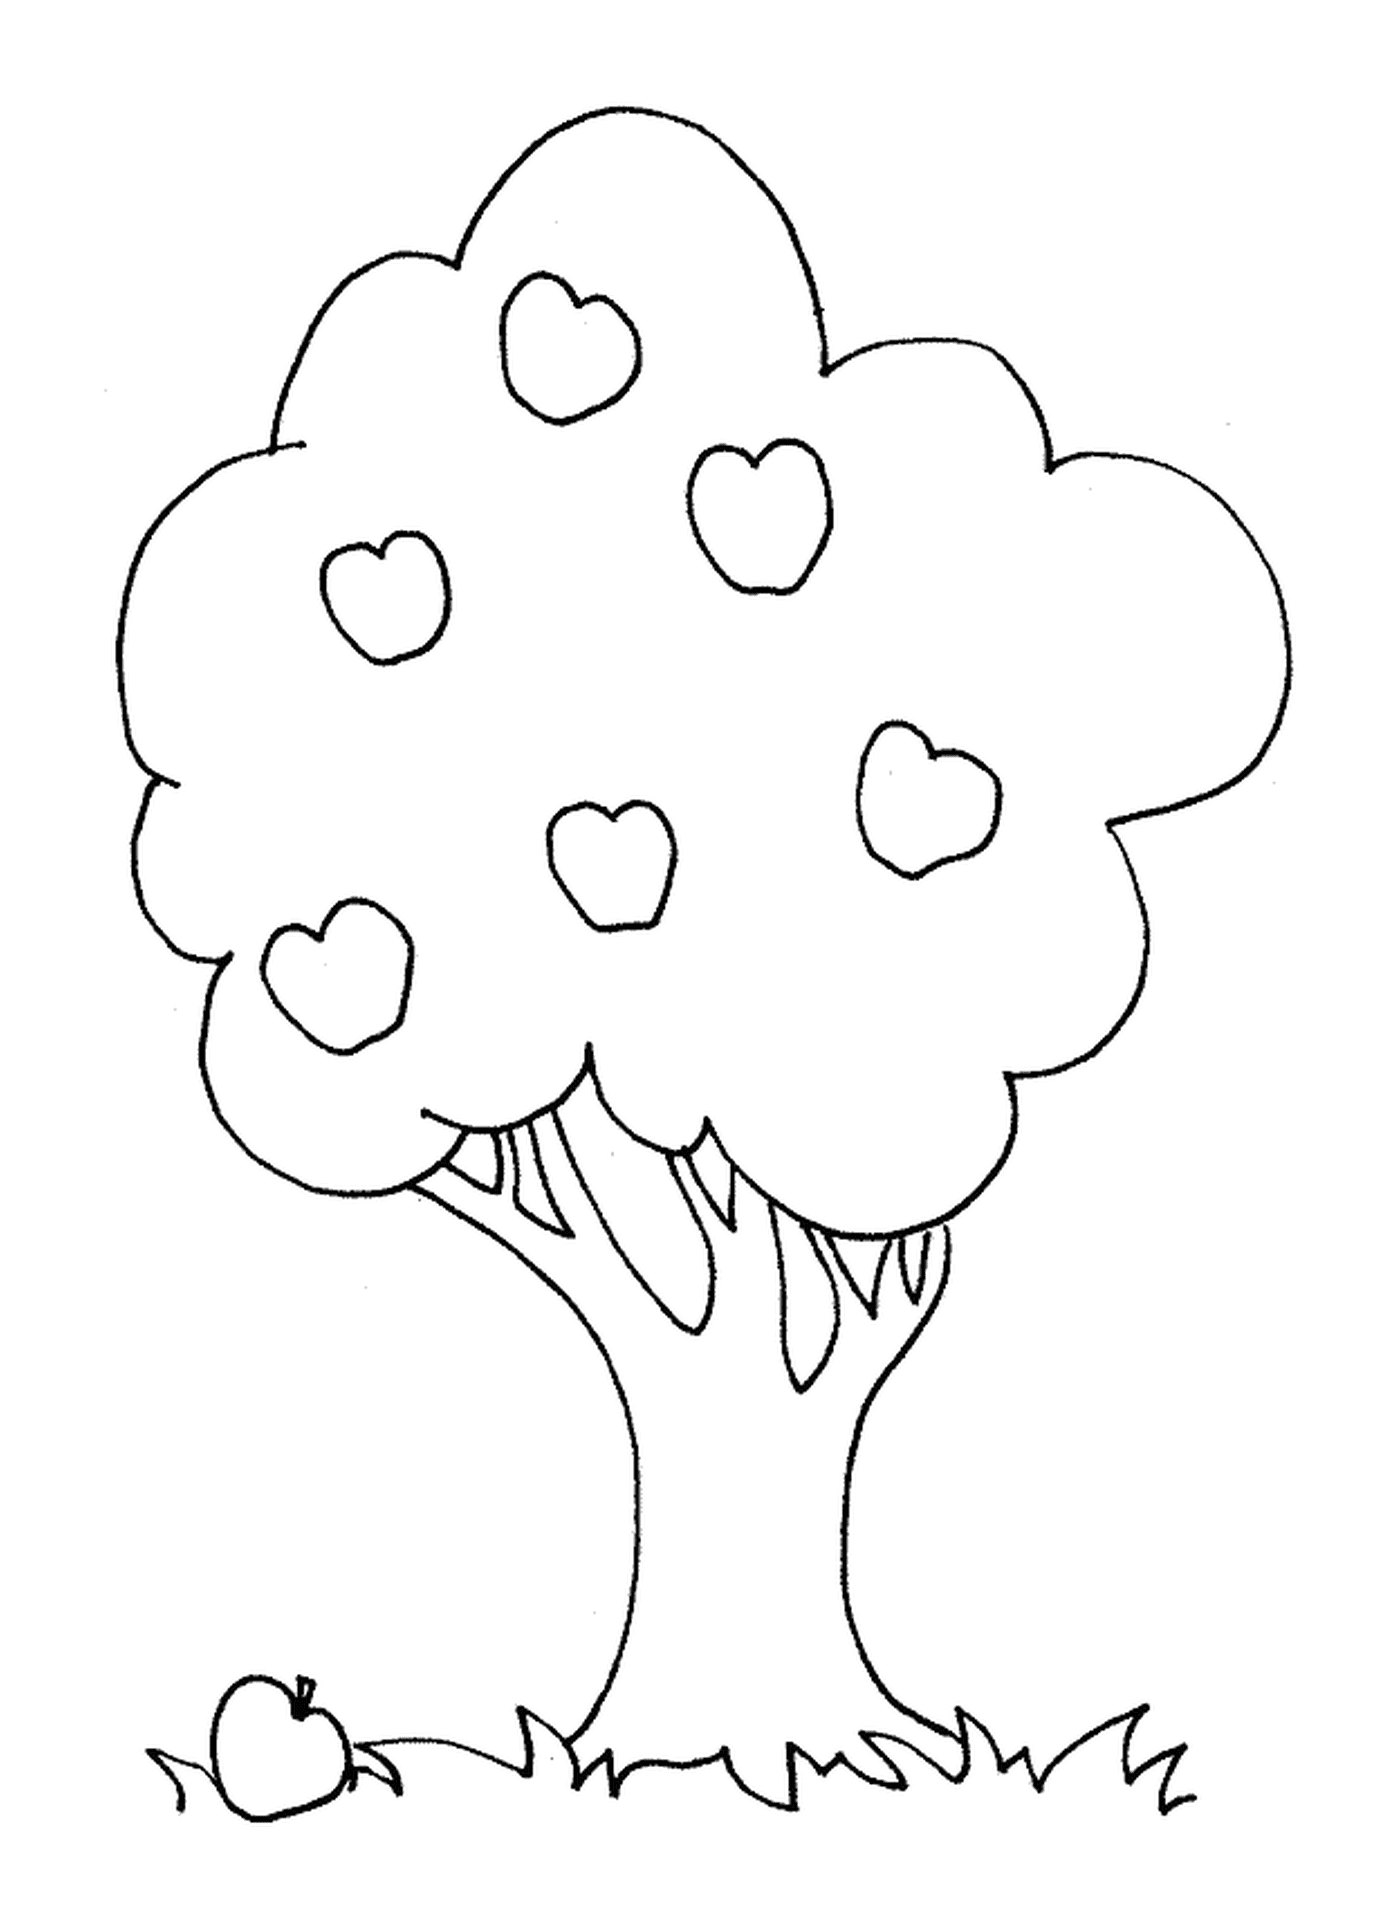  Un árbol con corazones 